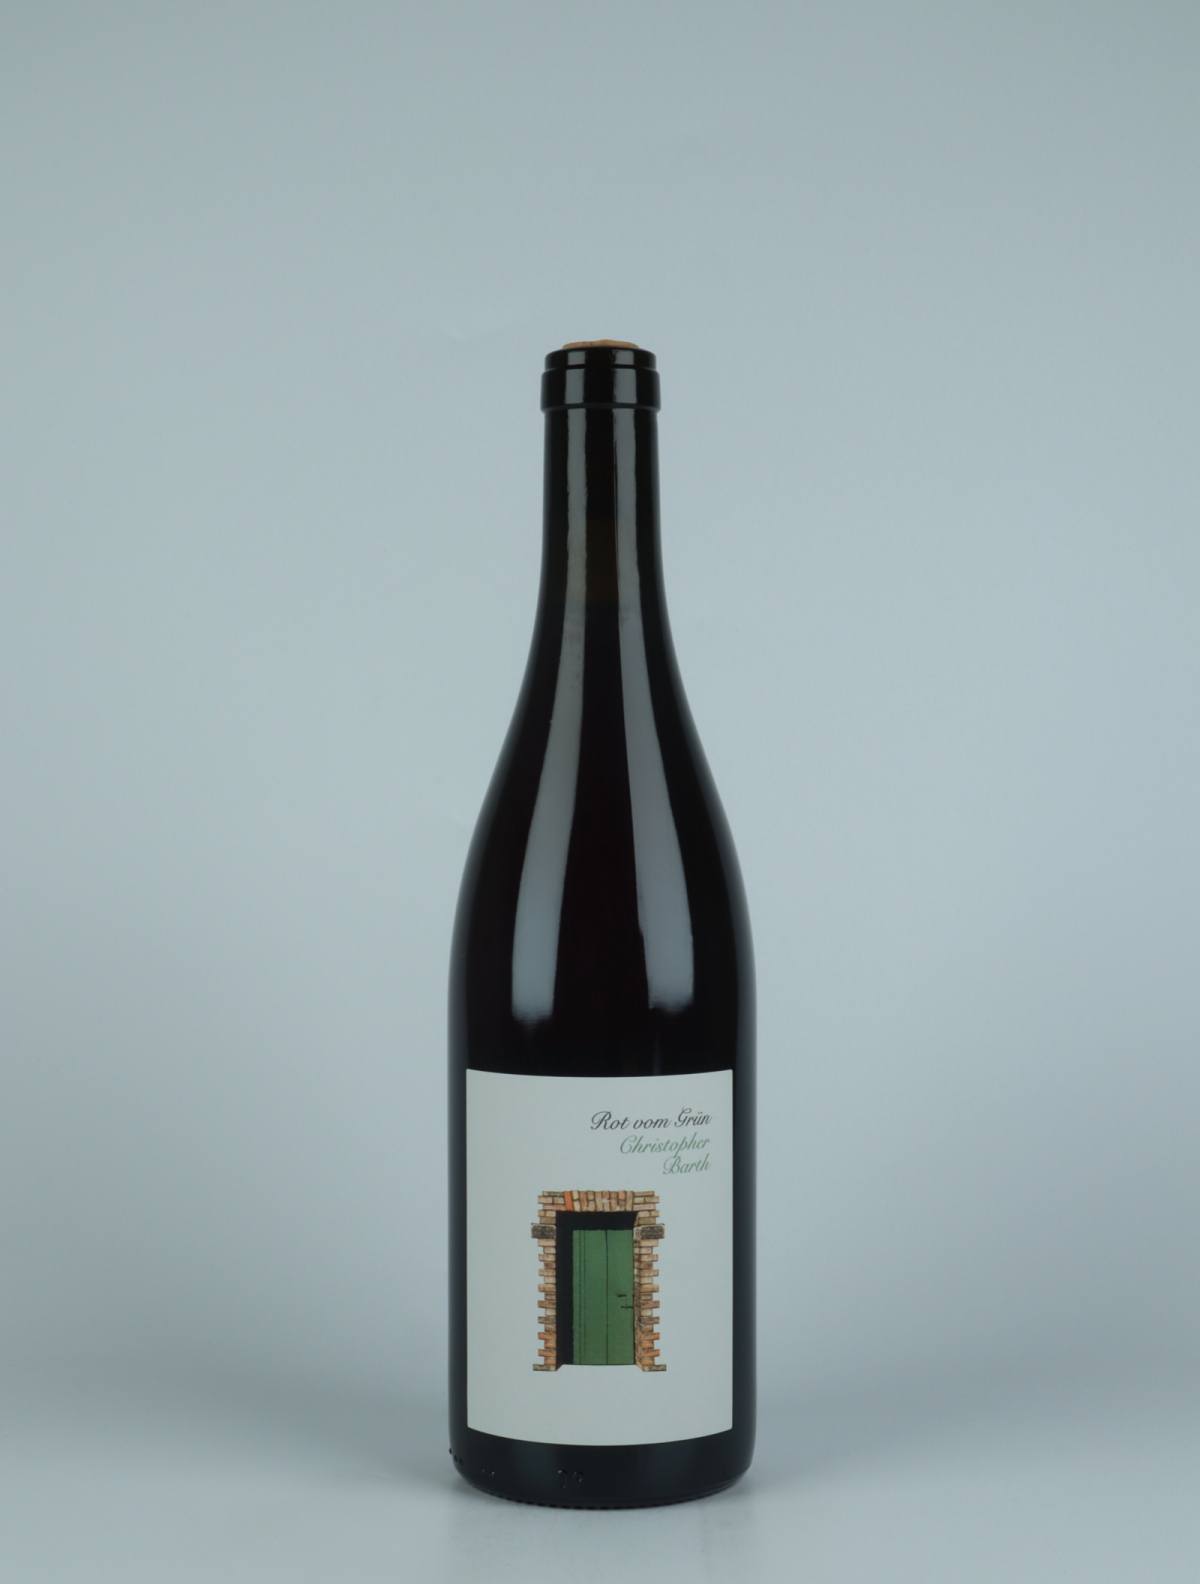 A bottle 2021 Rot vom Grün Red wine from Christopher Barth, Rheinhessen in Germany